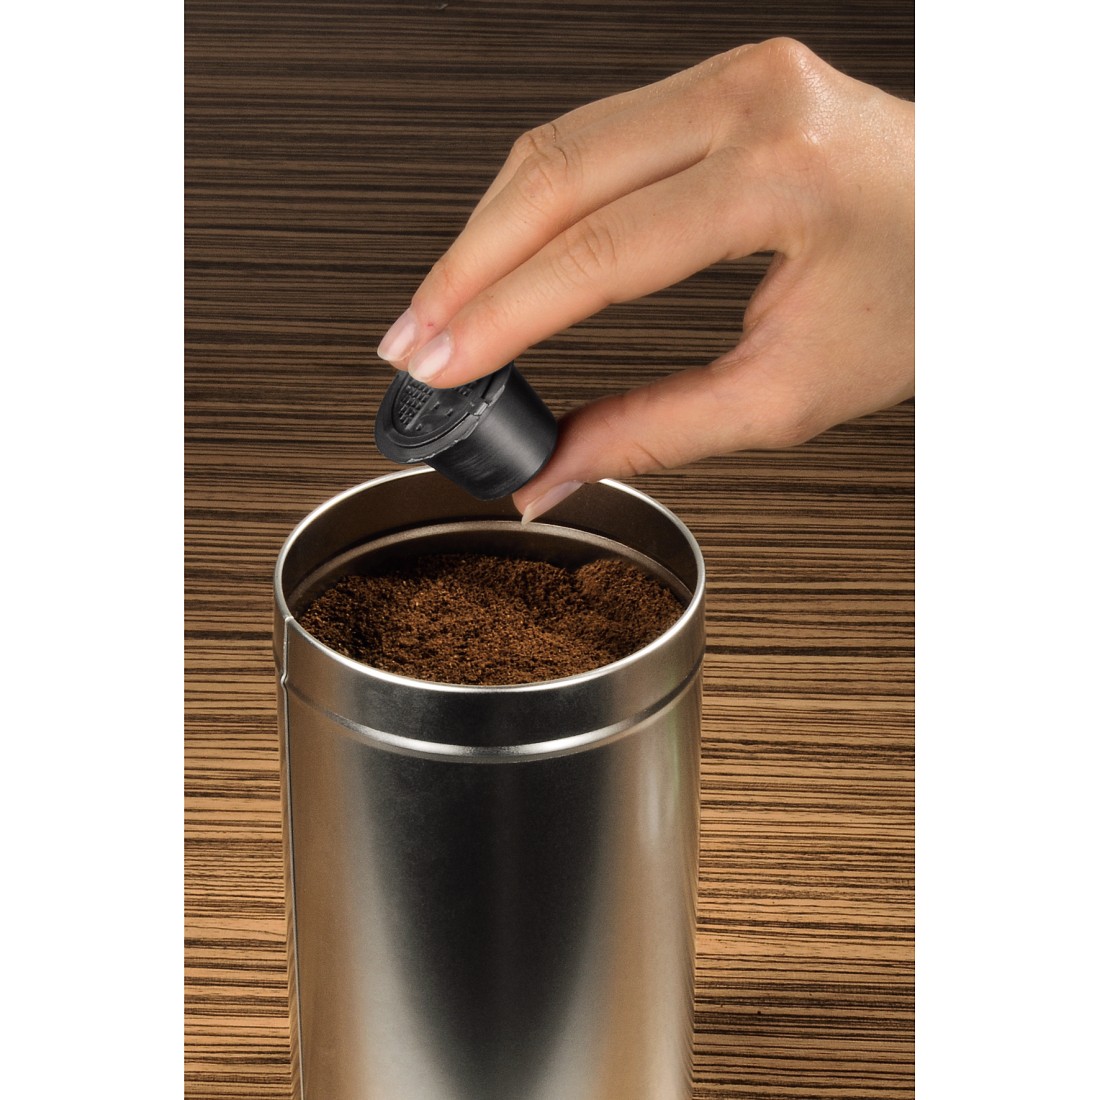 awx2 Druckfähige Anwendung 2 - Xavax, Espresso-Kapsel Coffeeduck für Nespresso-Maschinen